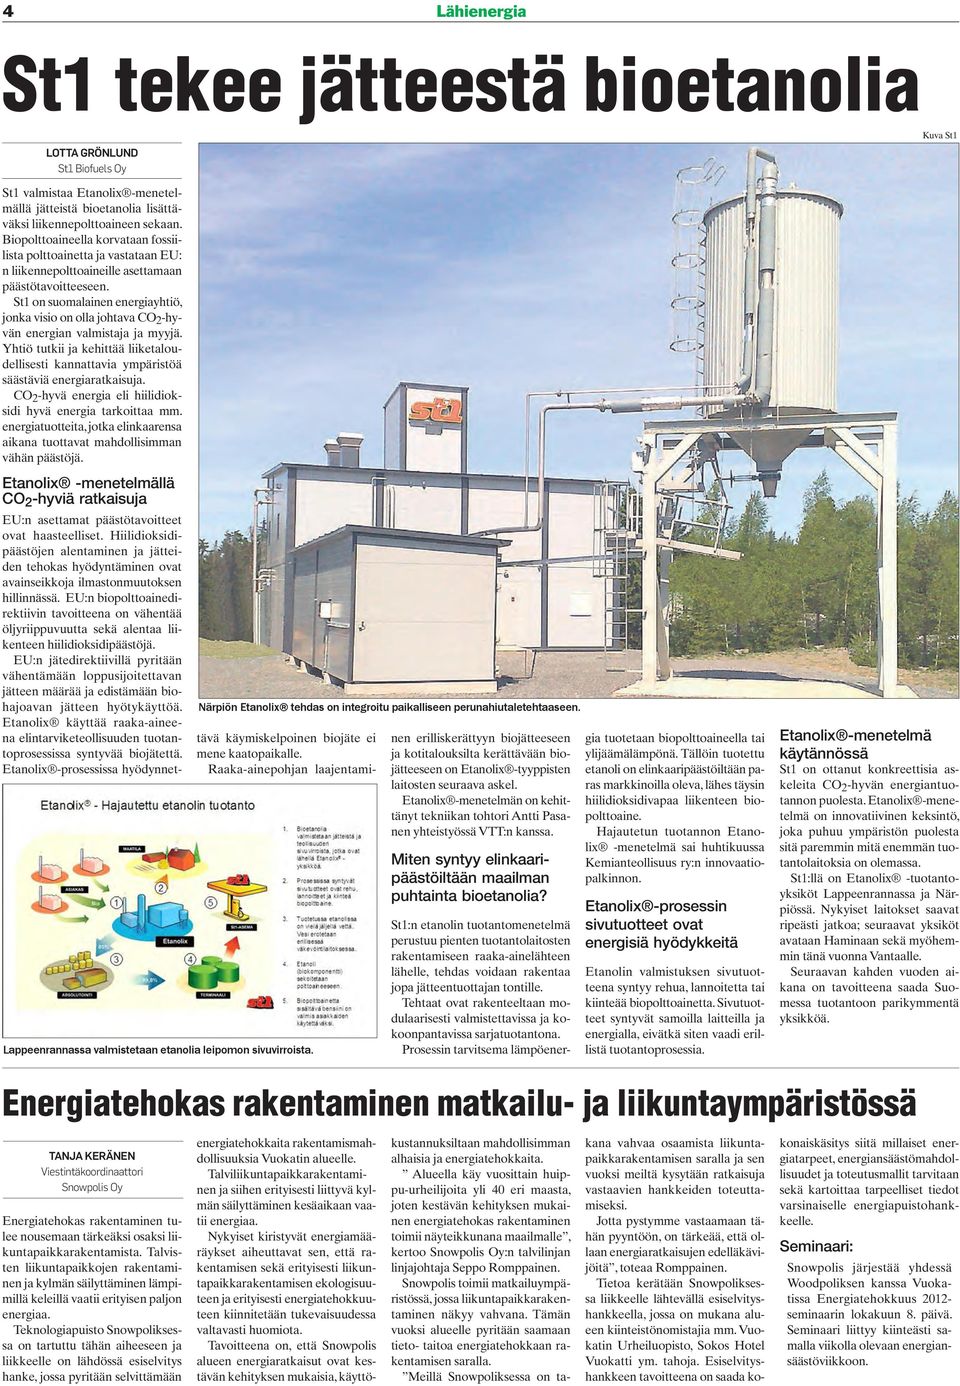 St1 on suomalainen energiayhtiö, jonka visio on olla johtava CO 2 -hyvän energian valmistaja ja myyjä. Yhtiö tutkii ja kehittää liiketaloudellisesti kannattavia ympäristöä säästäviä energiaratkaisuja.